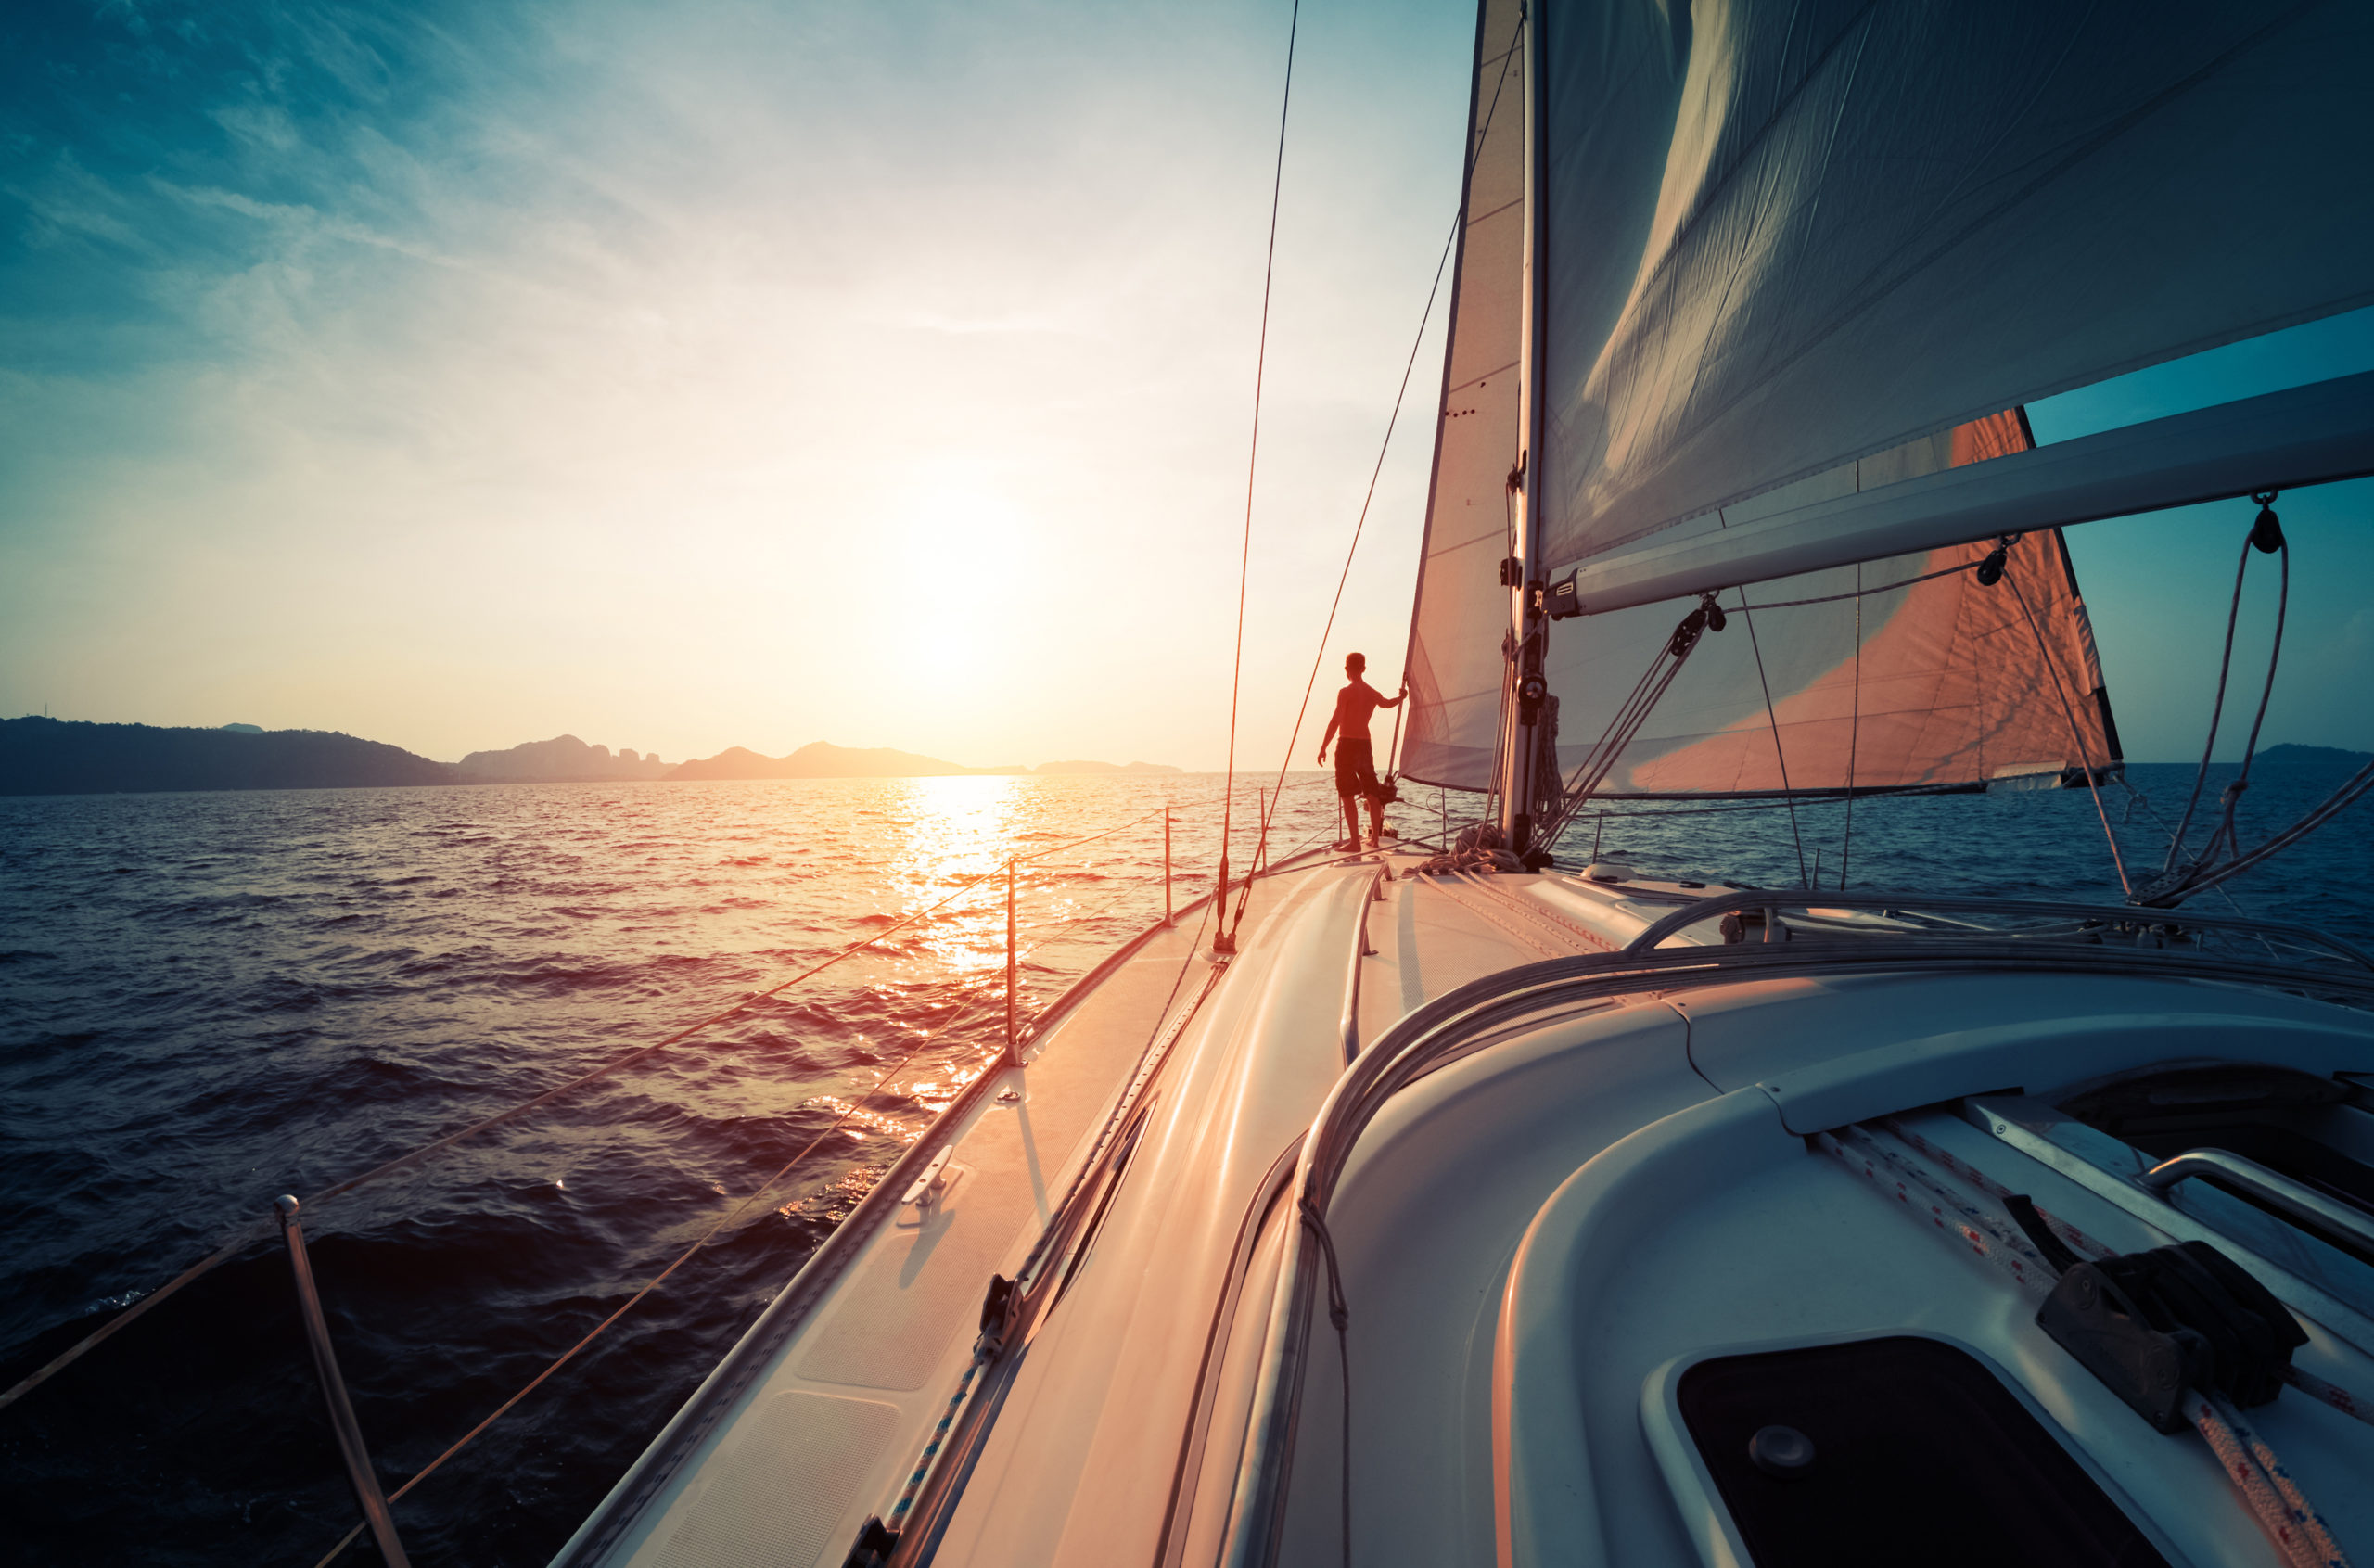 Jeune homme debout sur le yacht dans la mer au coucher du soleil